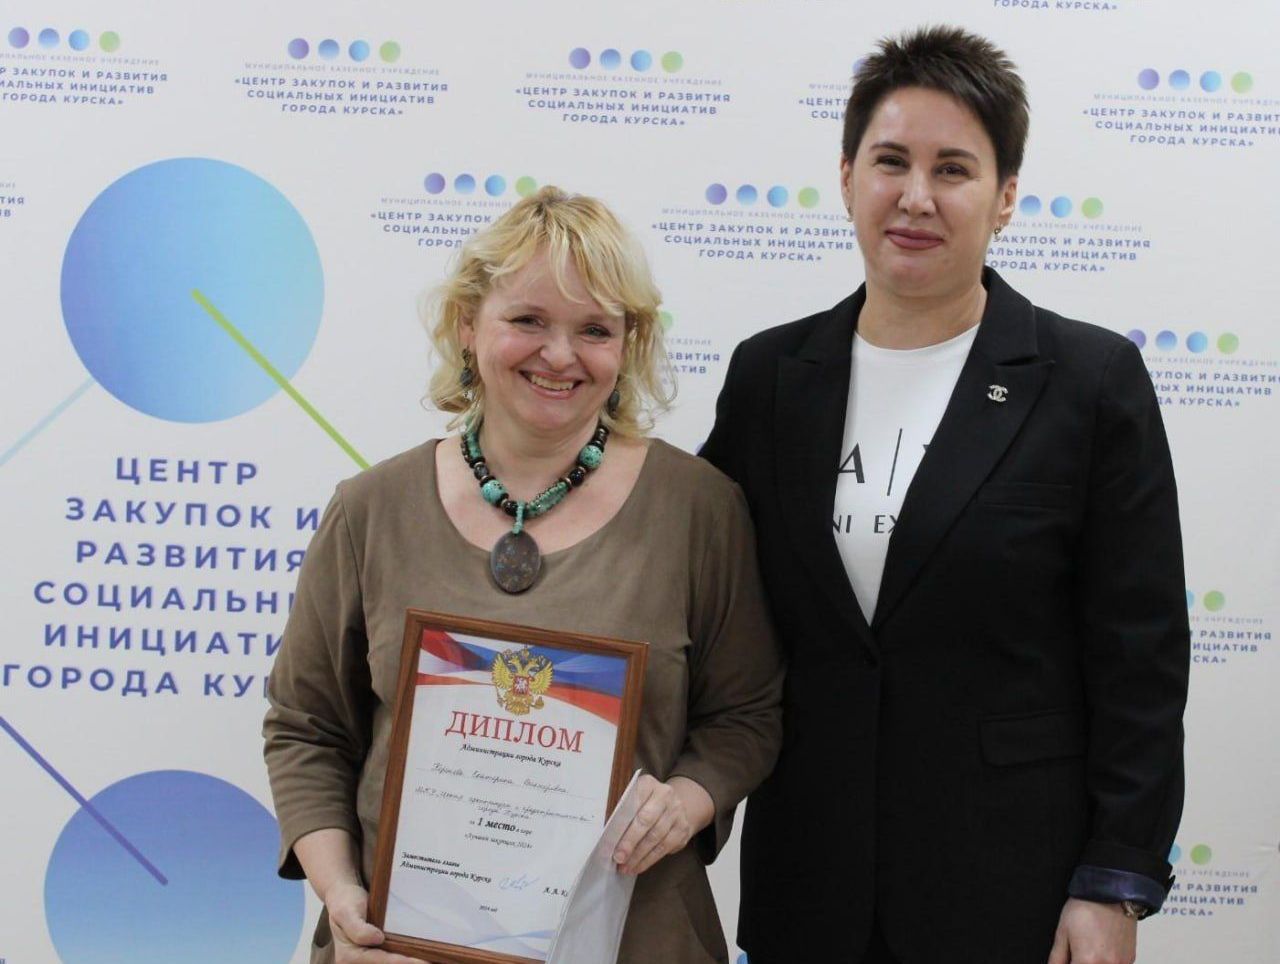 Сотрудники Центра закупок и развития социальных инициатив города Курска провели игру «Лучший закупщик-2024».